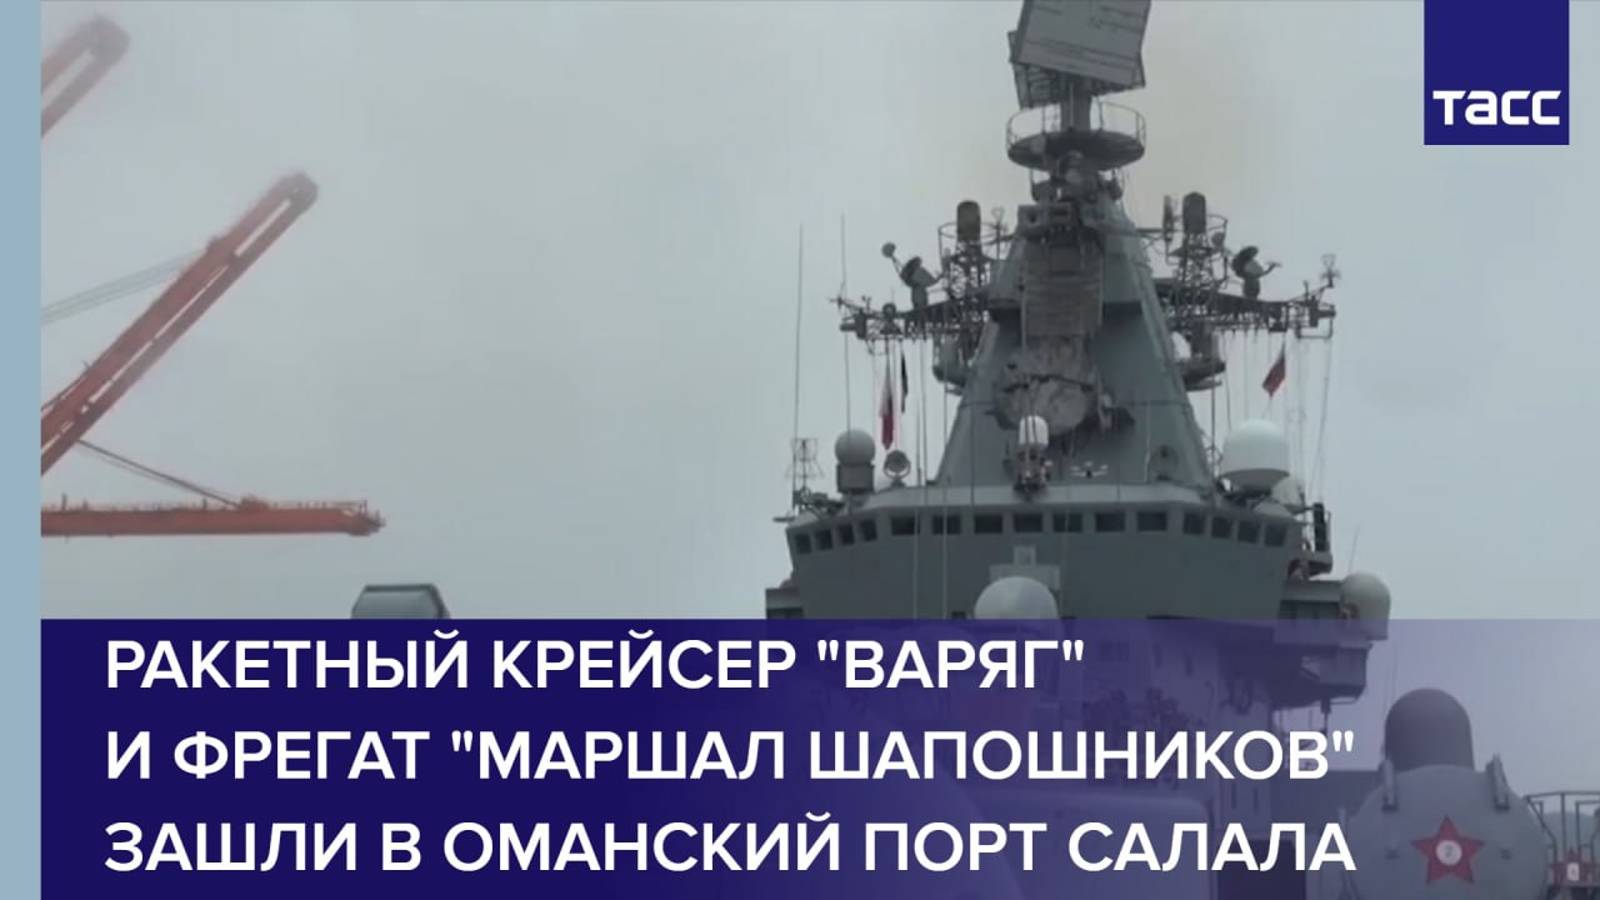 Ракетный крейсер "Варяг" и фрегат "Маршал Шапошников" зашли в оманский порт Салала